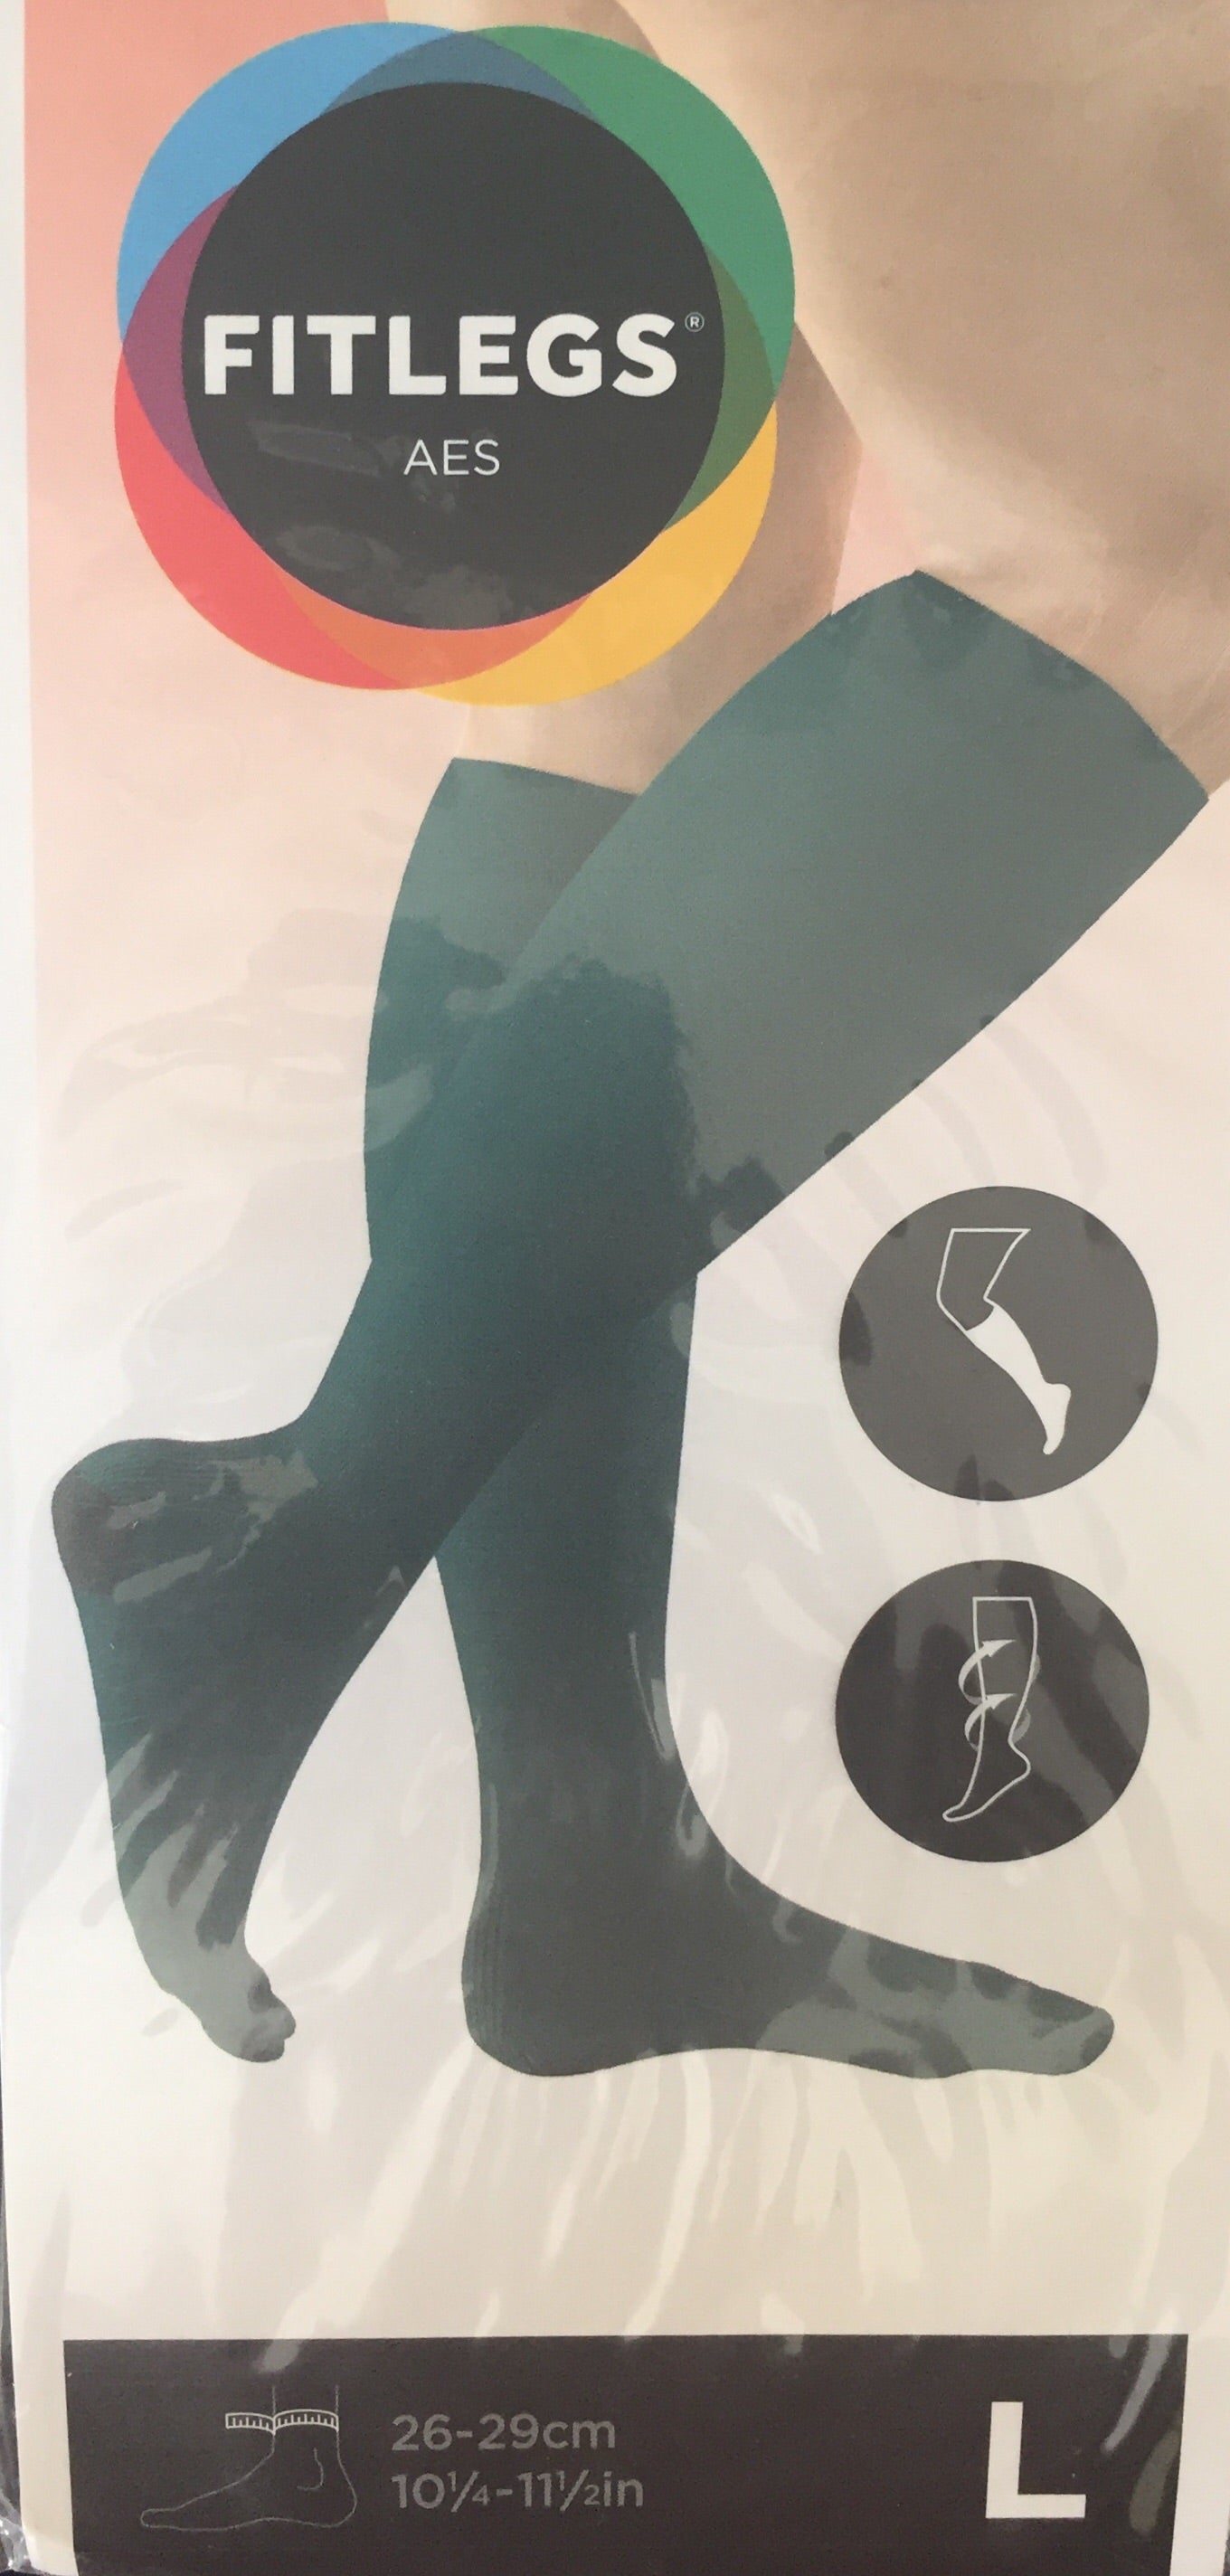 G&N MEDICAL FITLEGS Aes Grip Below Knee Anti-Embolism Socks 19-23Cm Green  £9.00 - PicClick UK